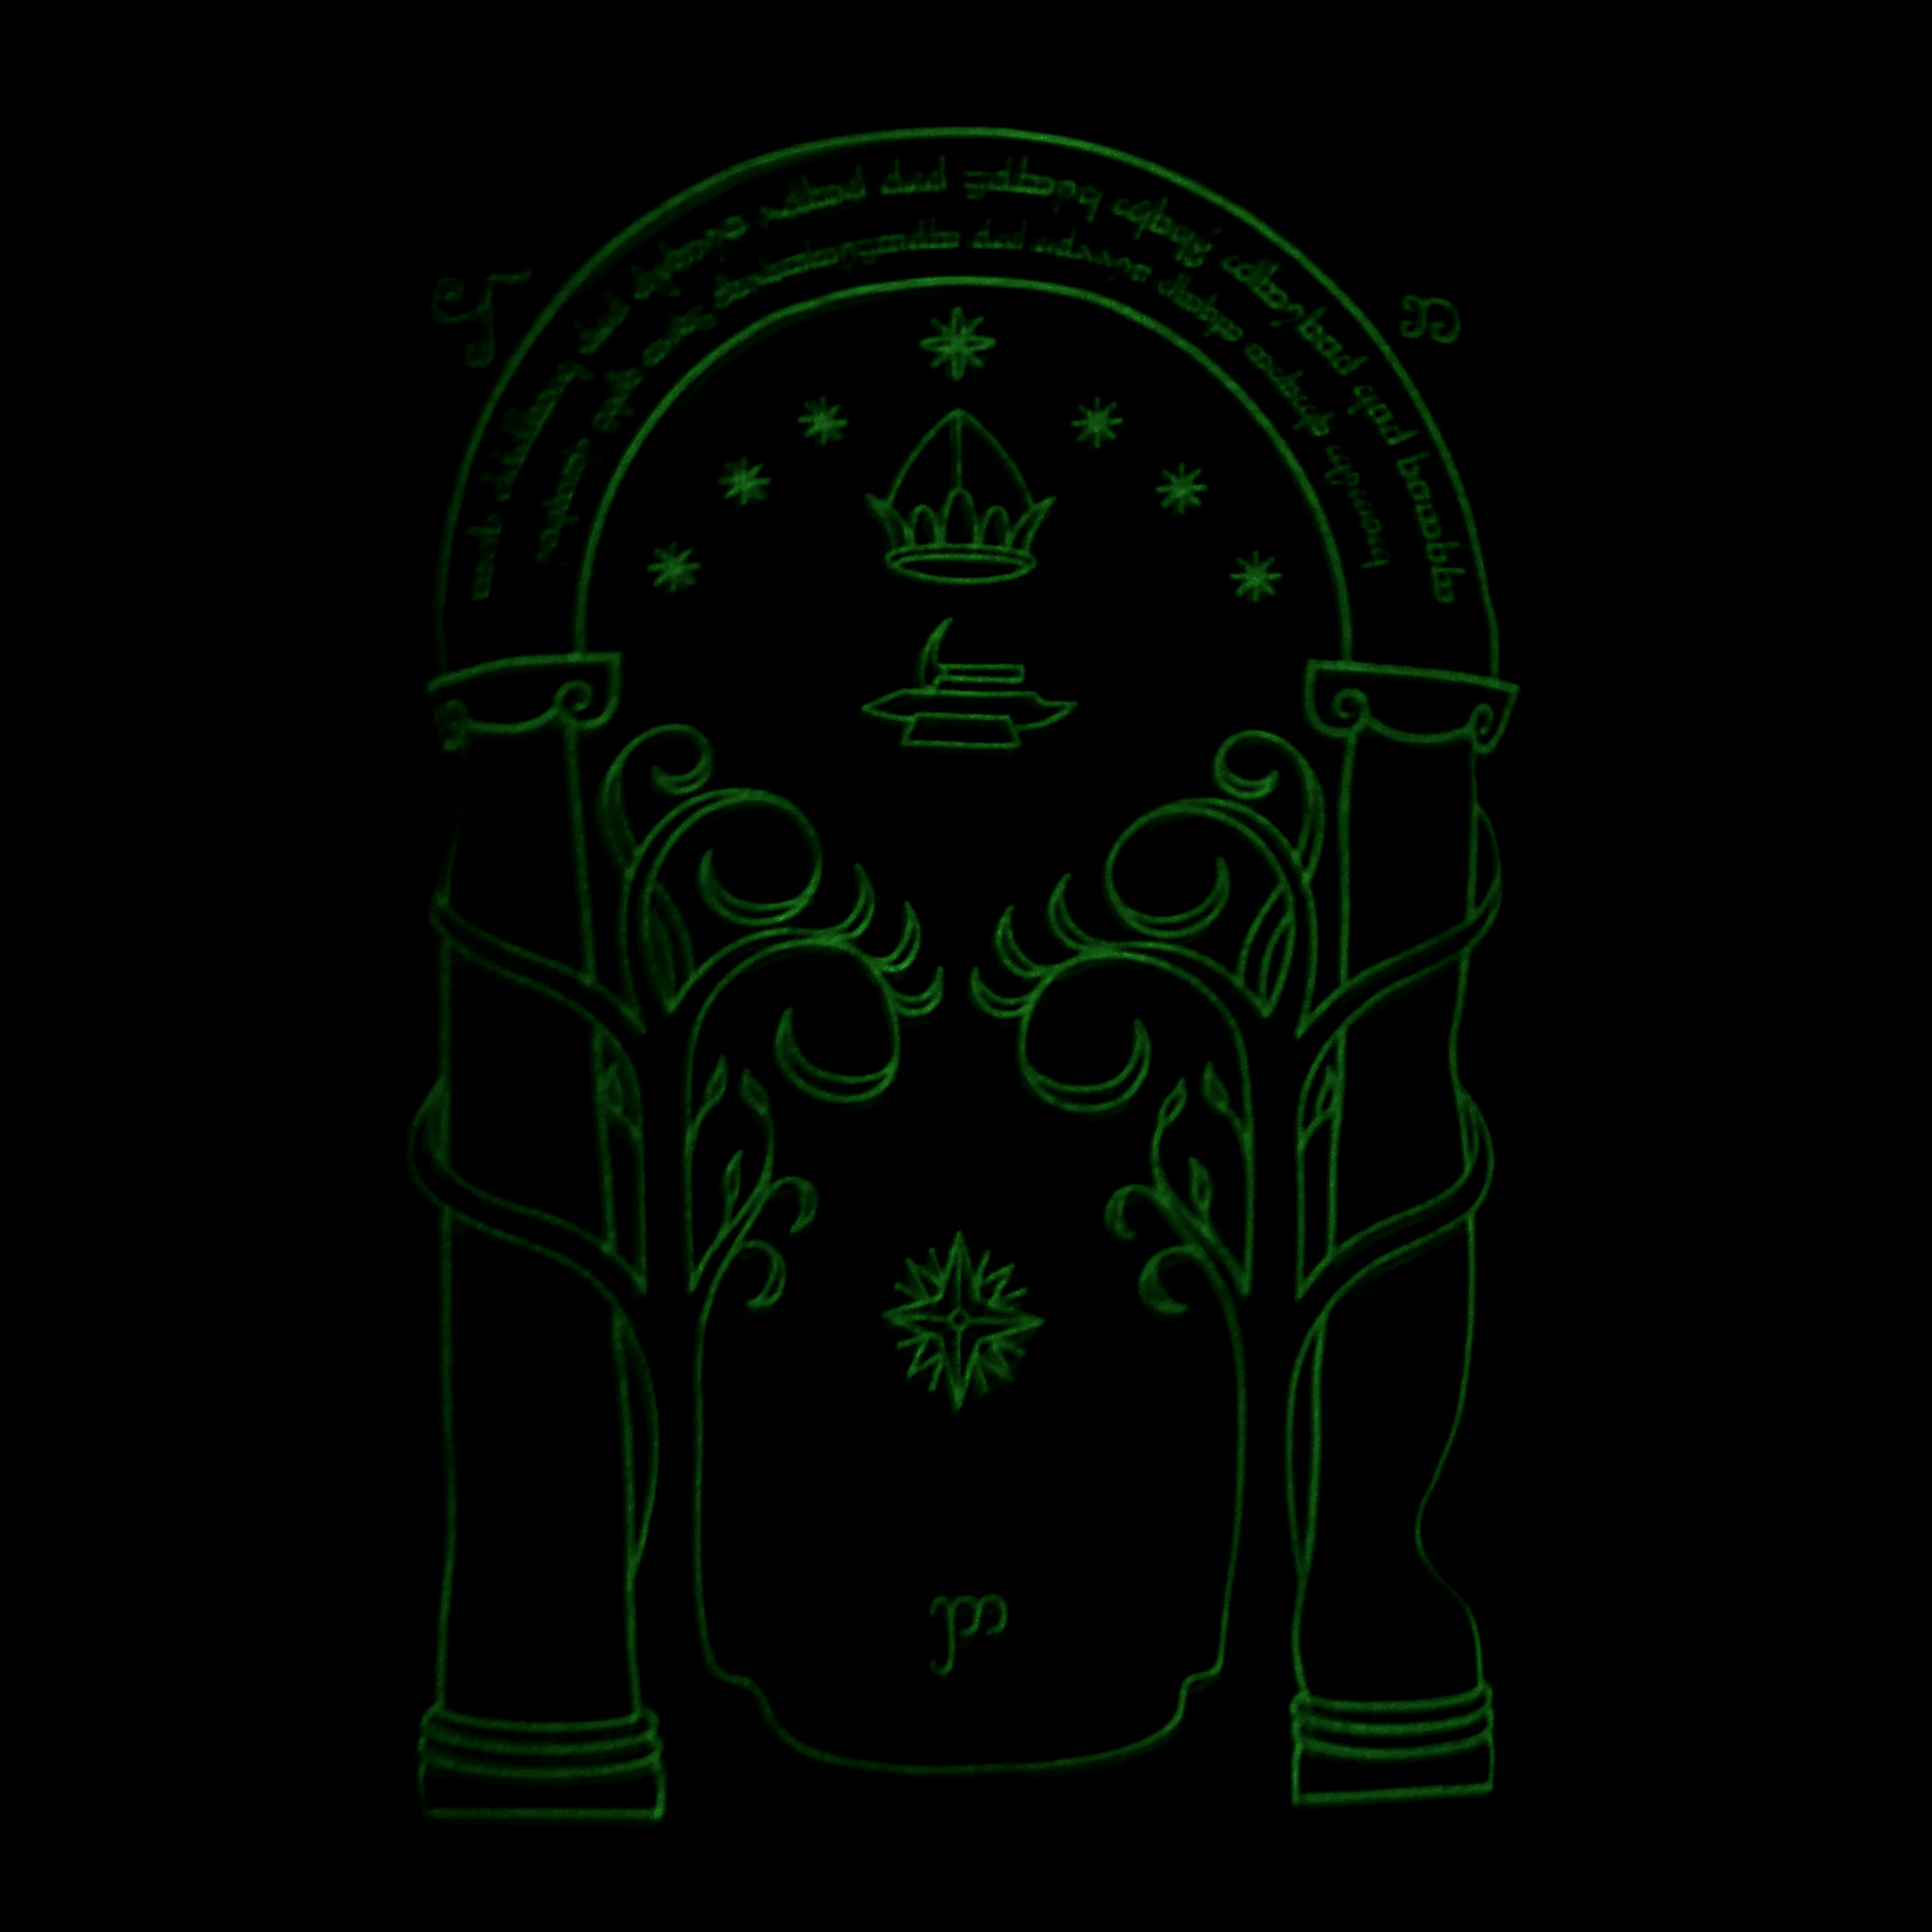 T-Shirt Portes de Durin Glow in the Dark pour fans du Seigneur des Anneaux